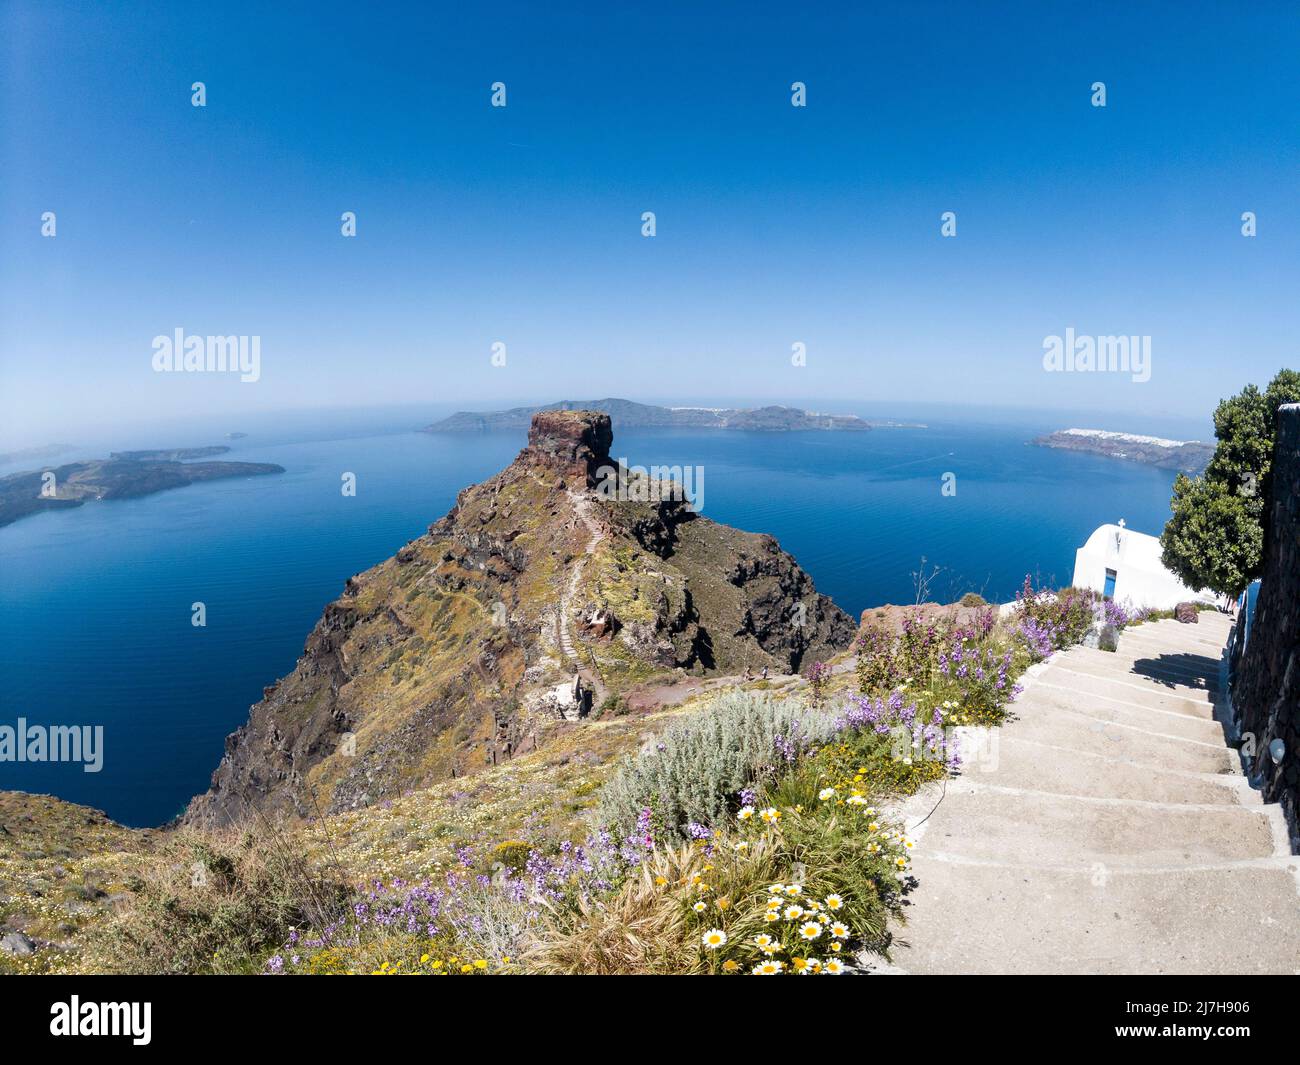 Splendida vista sulla collina rocciosa di Skaros, sull'isola di Santorini, in Grecia, e vista sul mare della parte vulcanica di Santorini e della leggendaria Caldera. Foto Stock